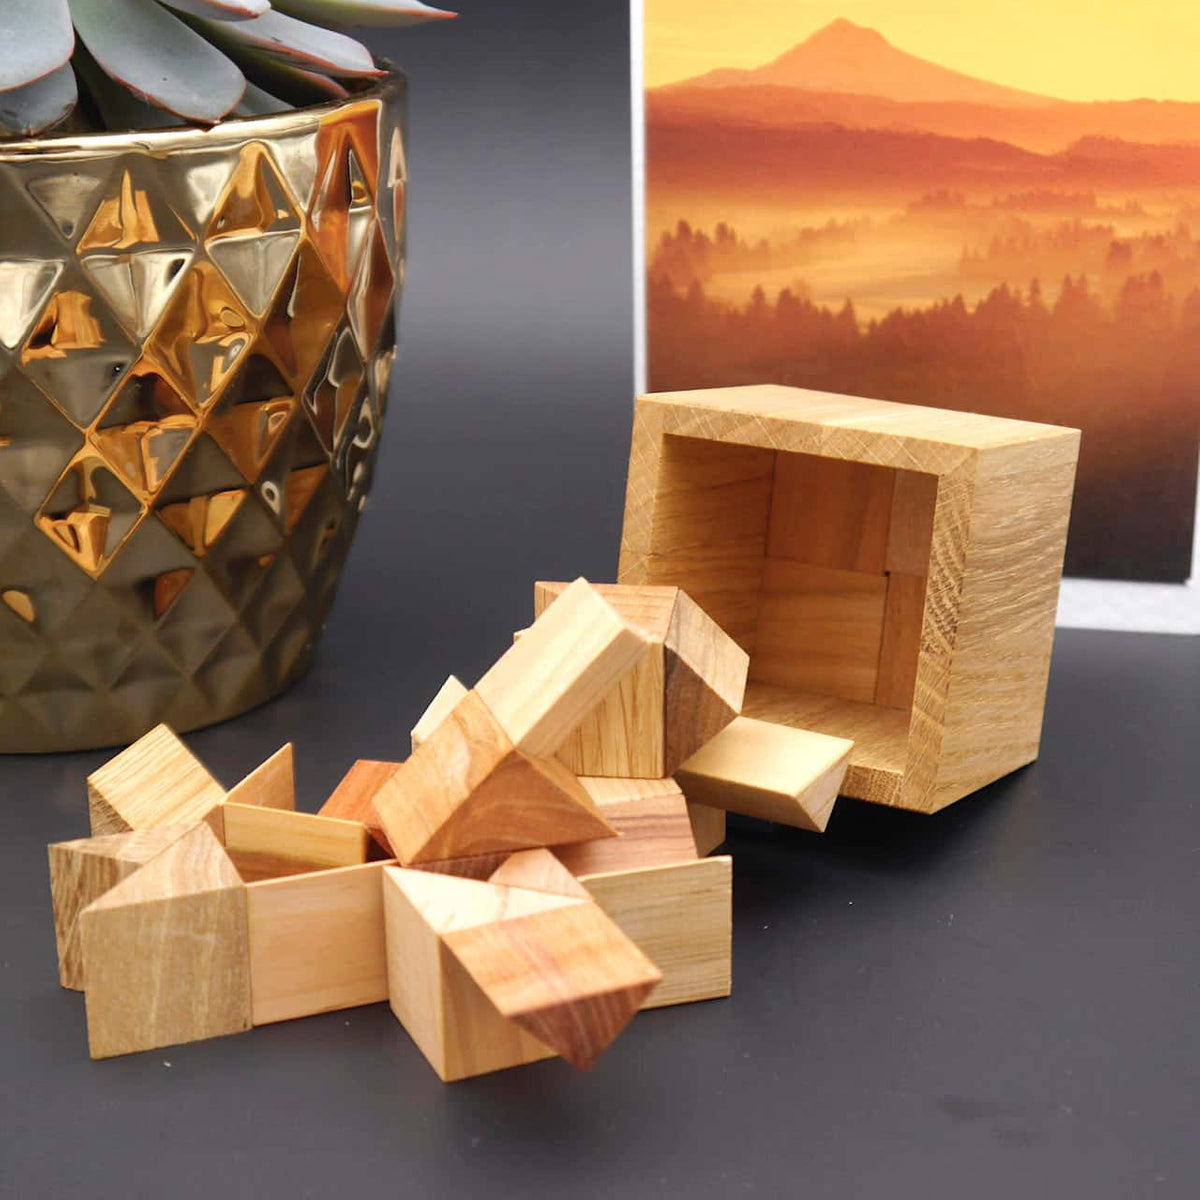 3/4 CUBE - hochwertiges Denkspiel aus 8 unkonventionell geformten Holzteilen